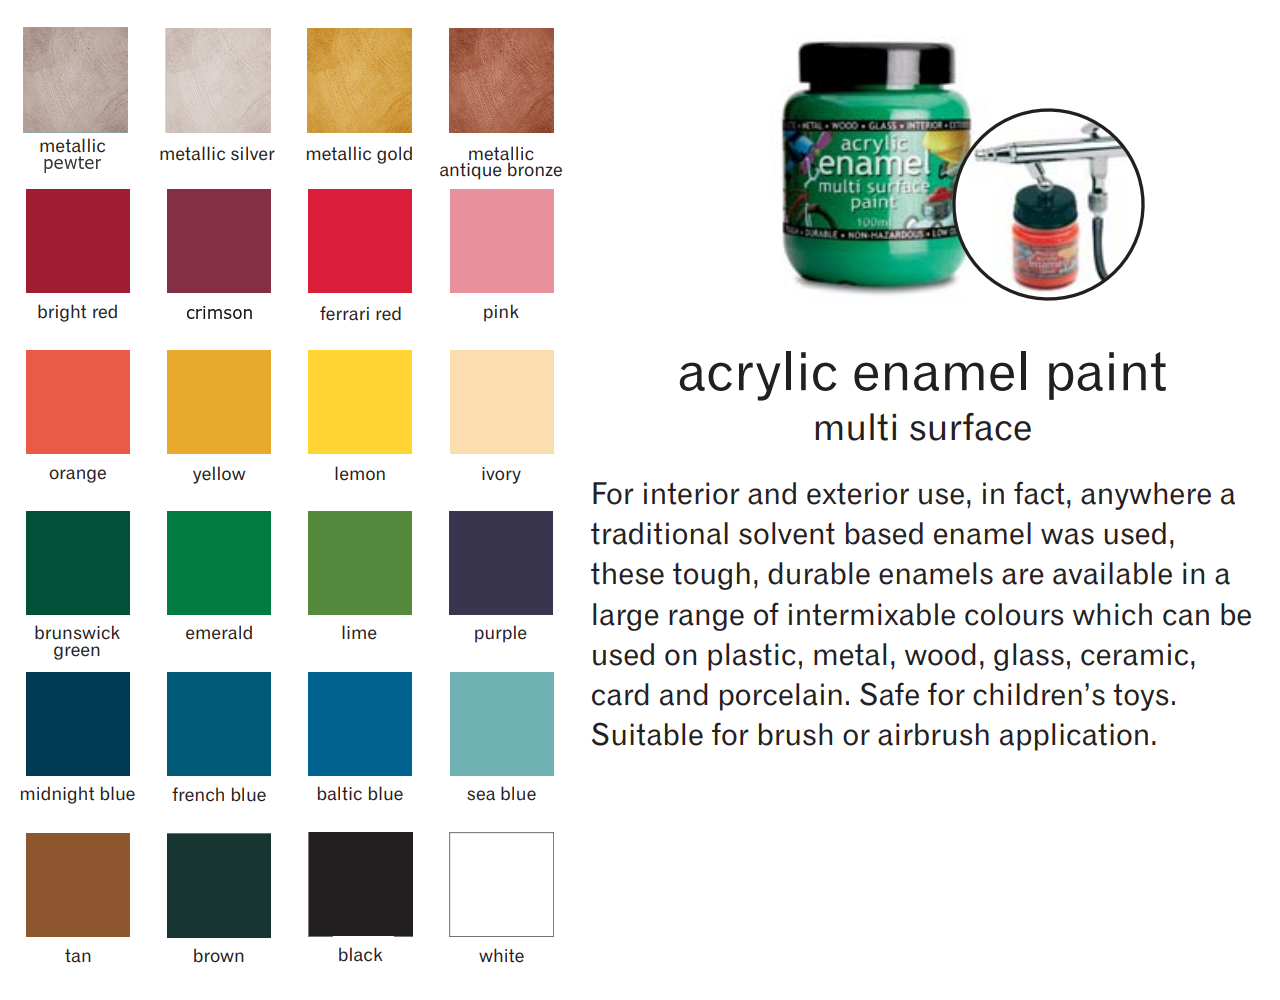 Polyvine Acrylic Enamel Paint